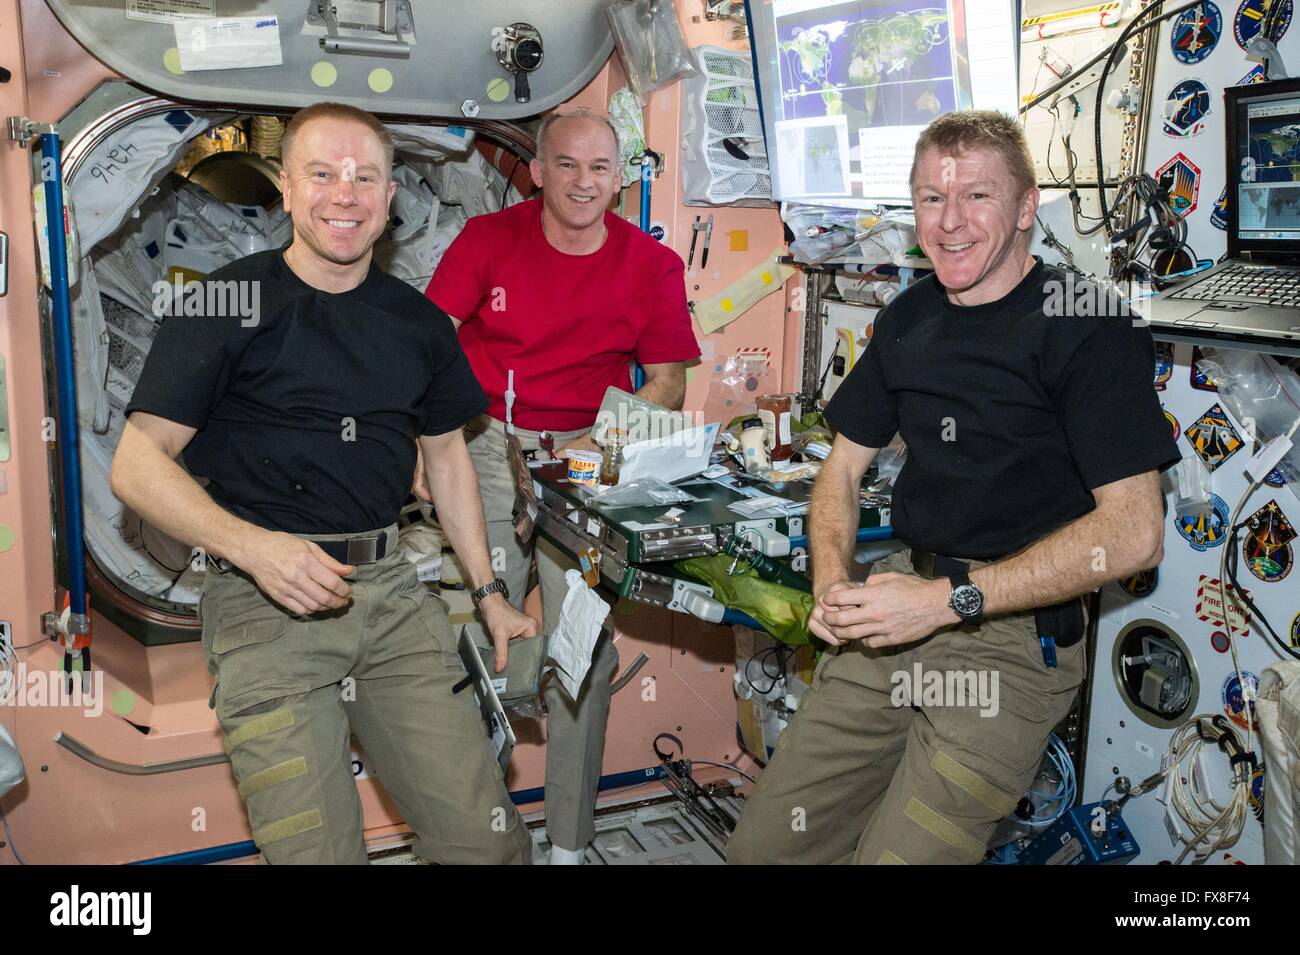 Stazione Spaziale Internazionale Expedition 47 membri di equipaggio astronauti americani Tim Kopra (sinistra) e Jeff Williams join astronauta britannico Tim Peake per la cena all'interno del modulo unità Aprile 5, 2016 in orbita intorno alla terra. Foto Stock